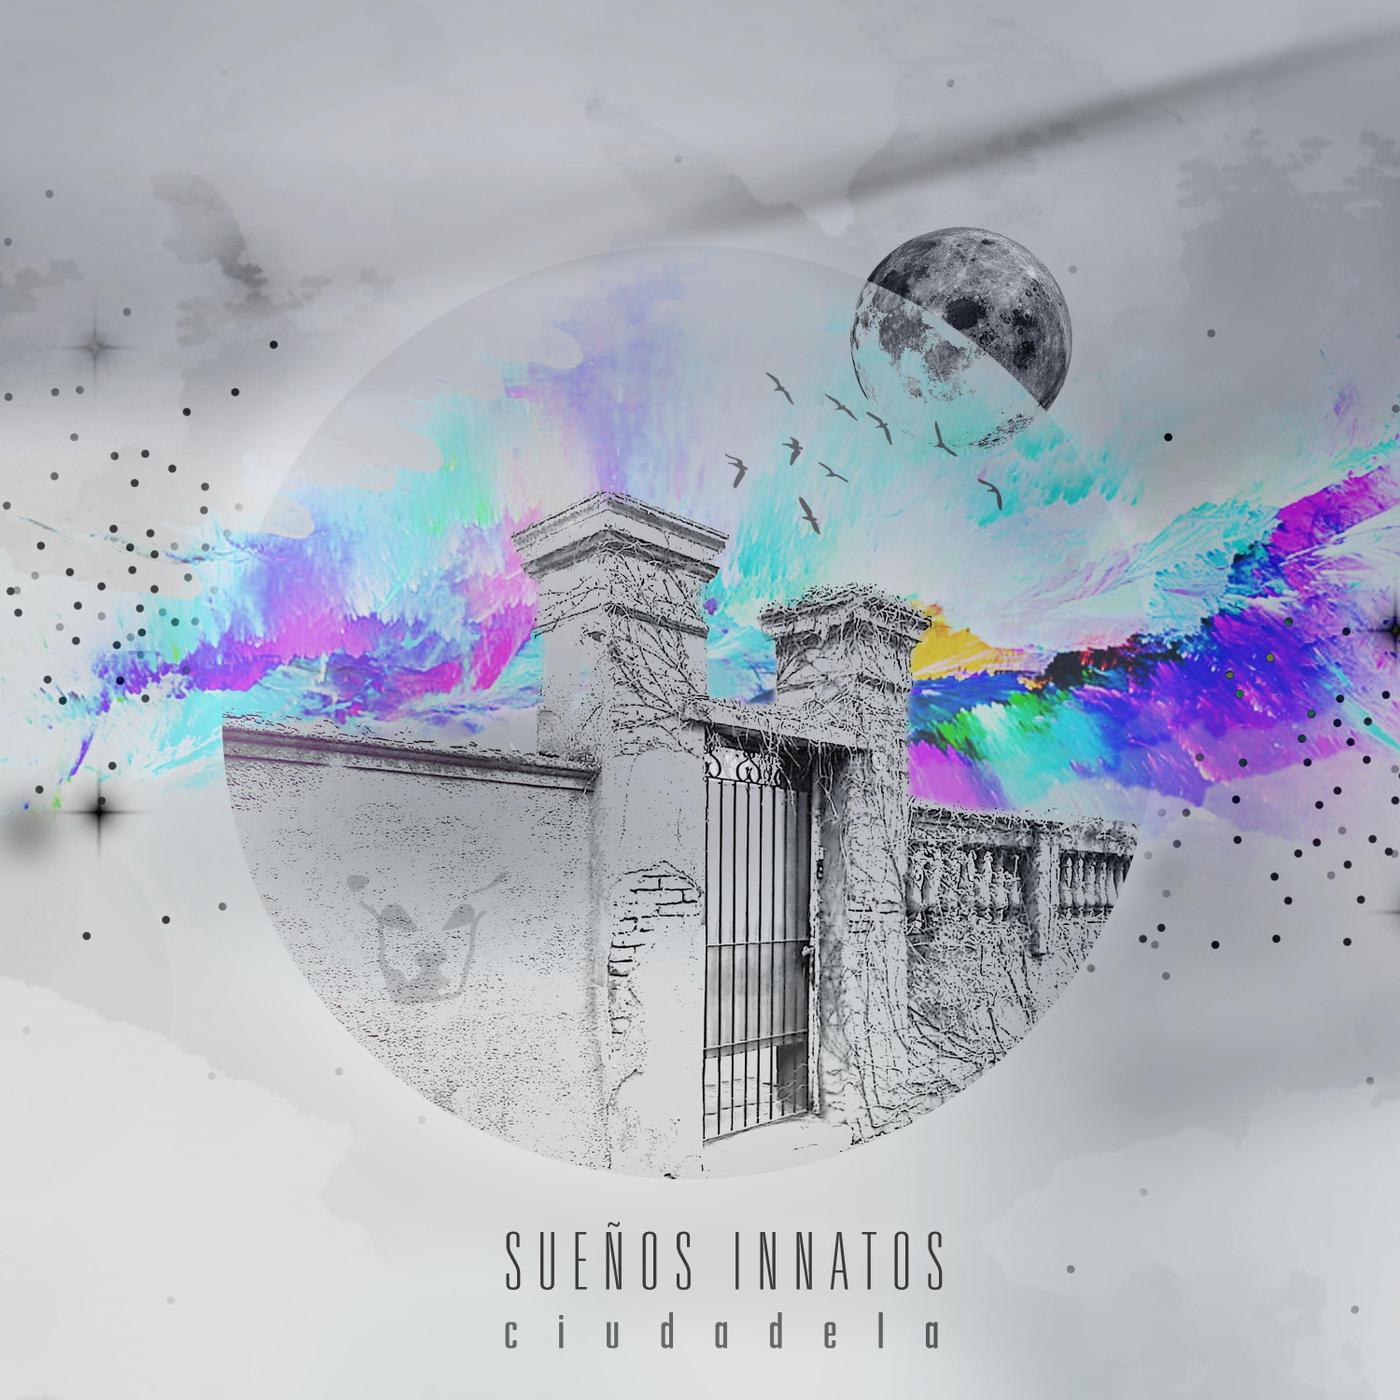 Sueños Innatos - Ciudad de Escombros (feat. Aleph)